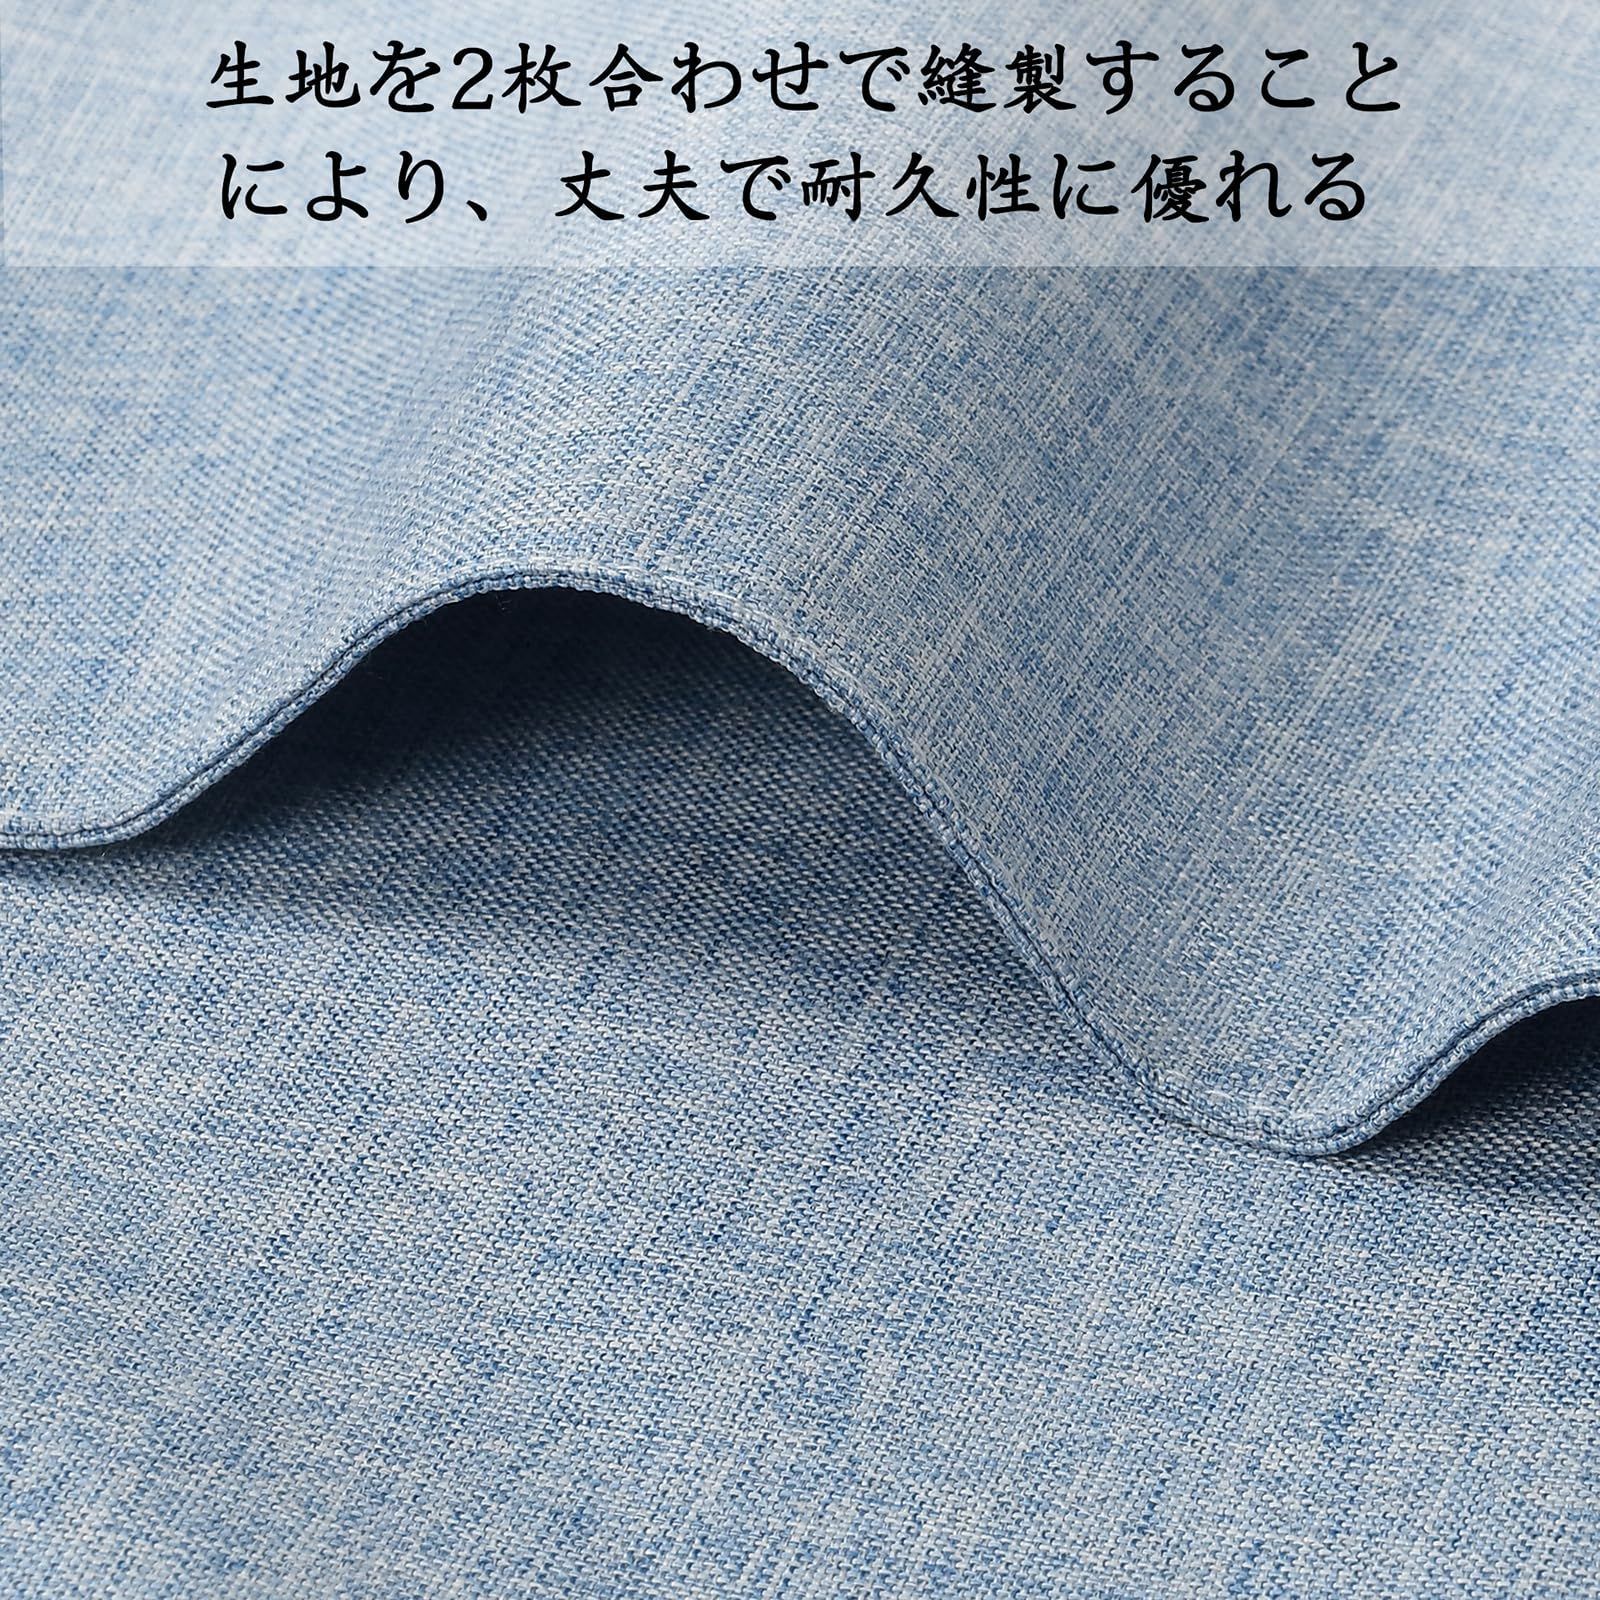 【色: ライトブルー】淳一屋 ランチョンマット布製 綿麻 二層生地縫製 丸洗い可